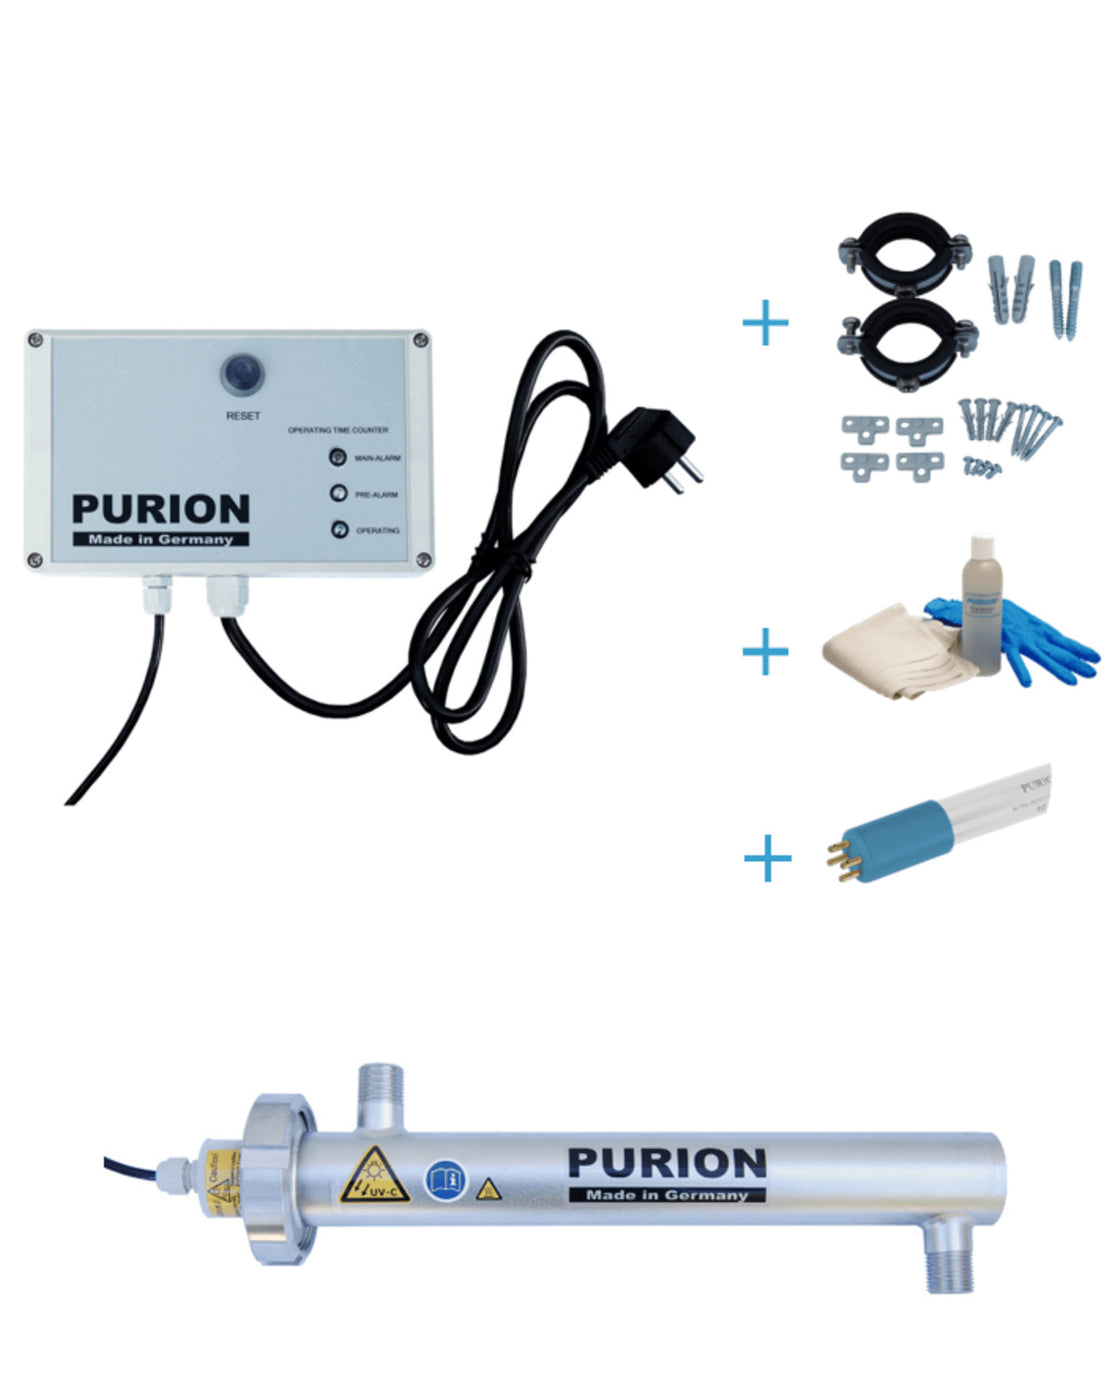 Das PURION 500 OTC Bundle ist ein autarkes Lebenssystem zur Desinfektionsanlage und Trinkwasseraufbereitung, hergestellt von der PURION GmbH.